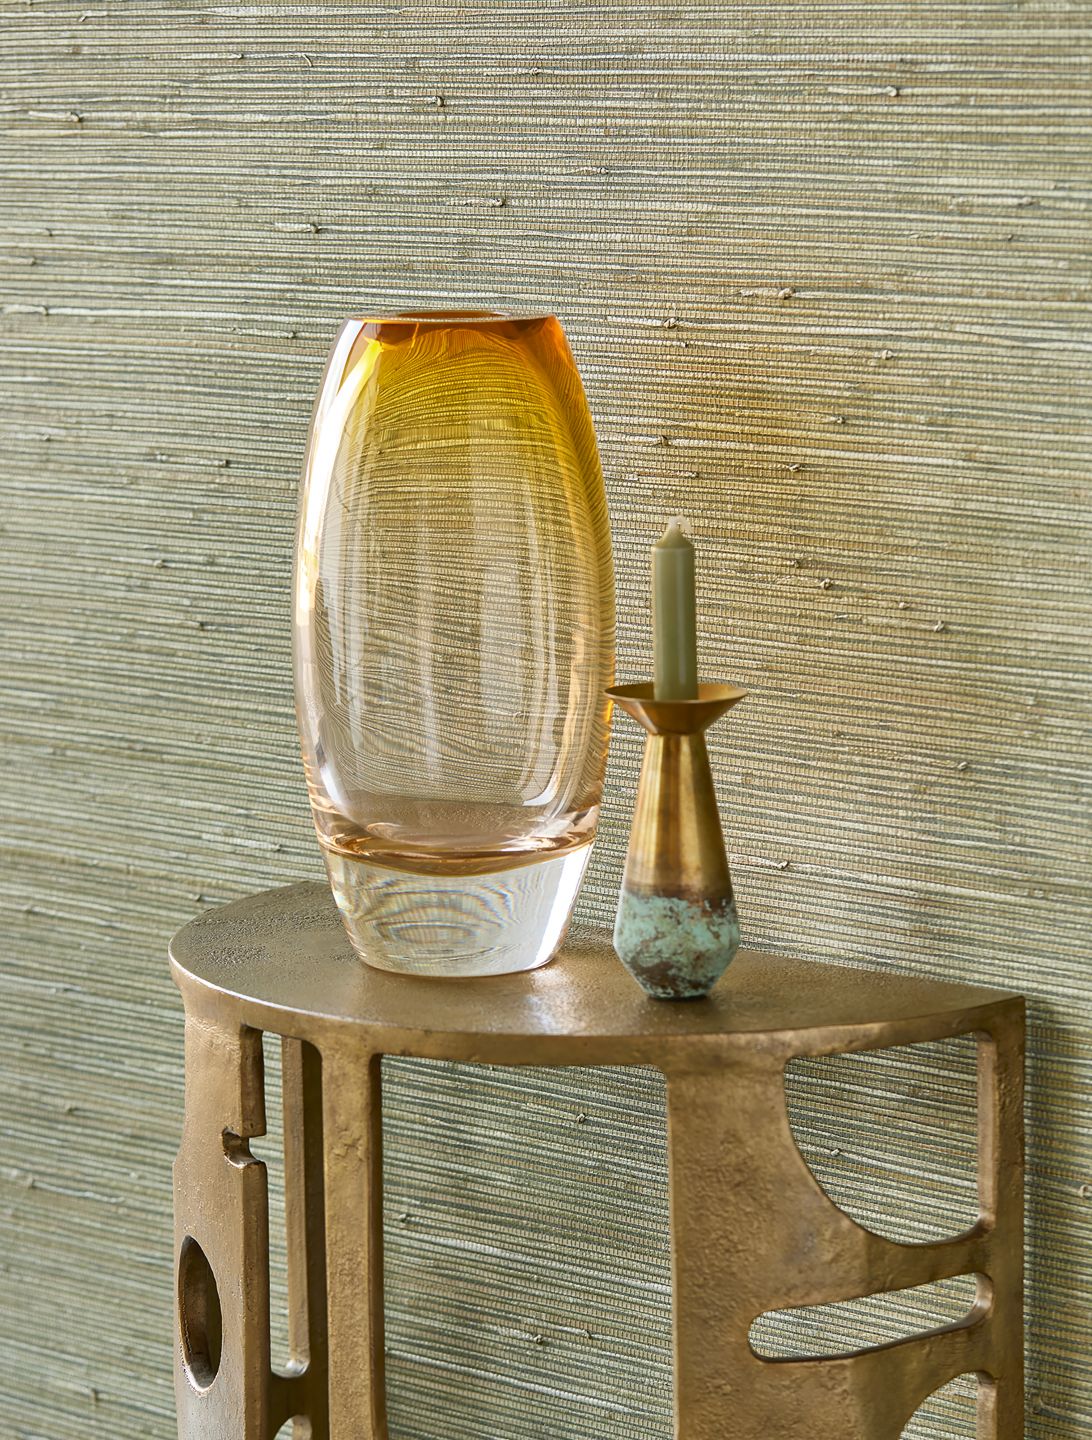 Papel de parede de juncos verdes por trás de uma mesa de apoio pequena com um vaso